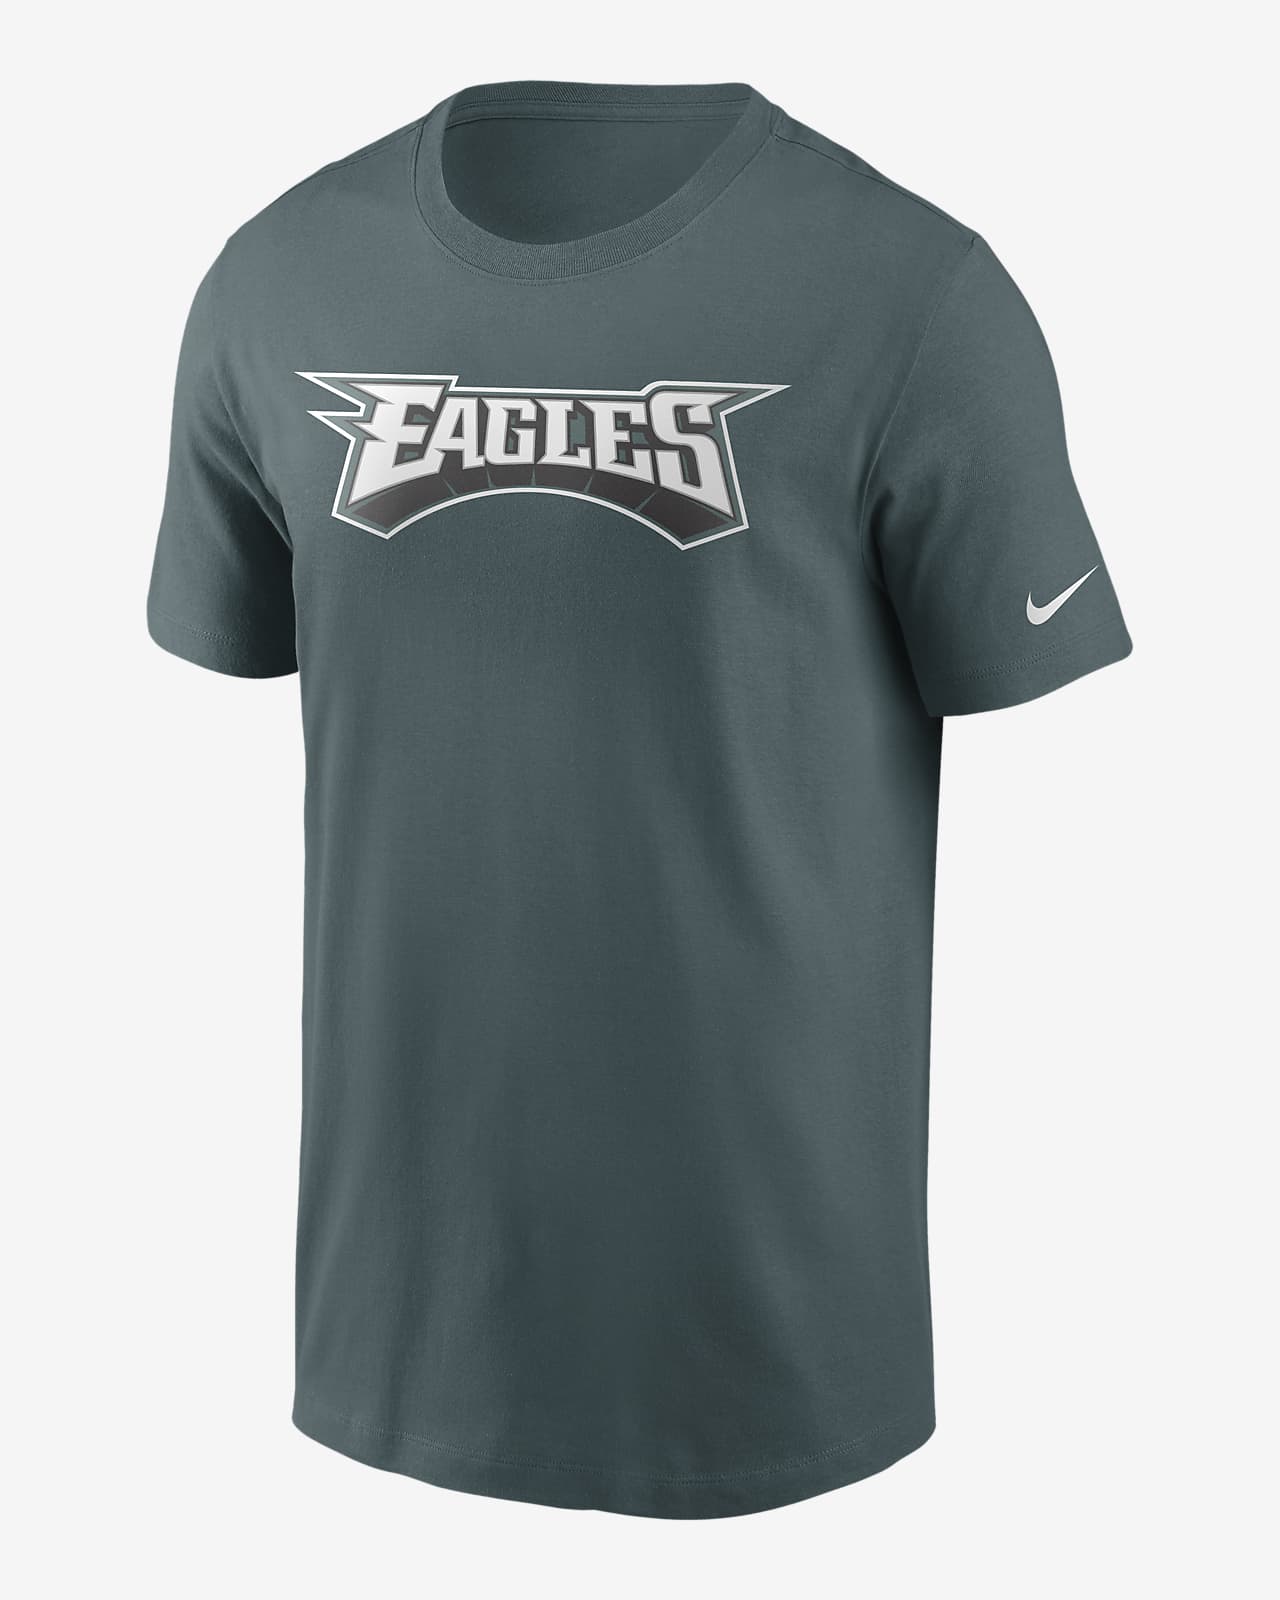 Nike (NFL Eagles) Men's T-Shirt. Nike.com